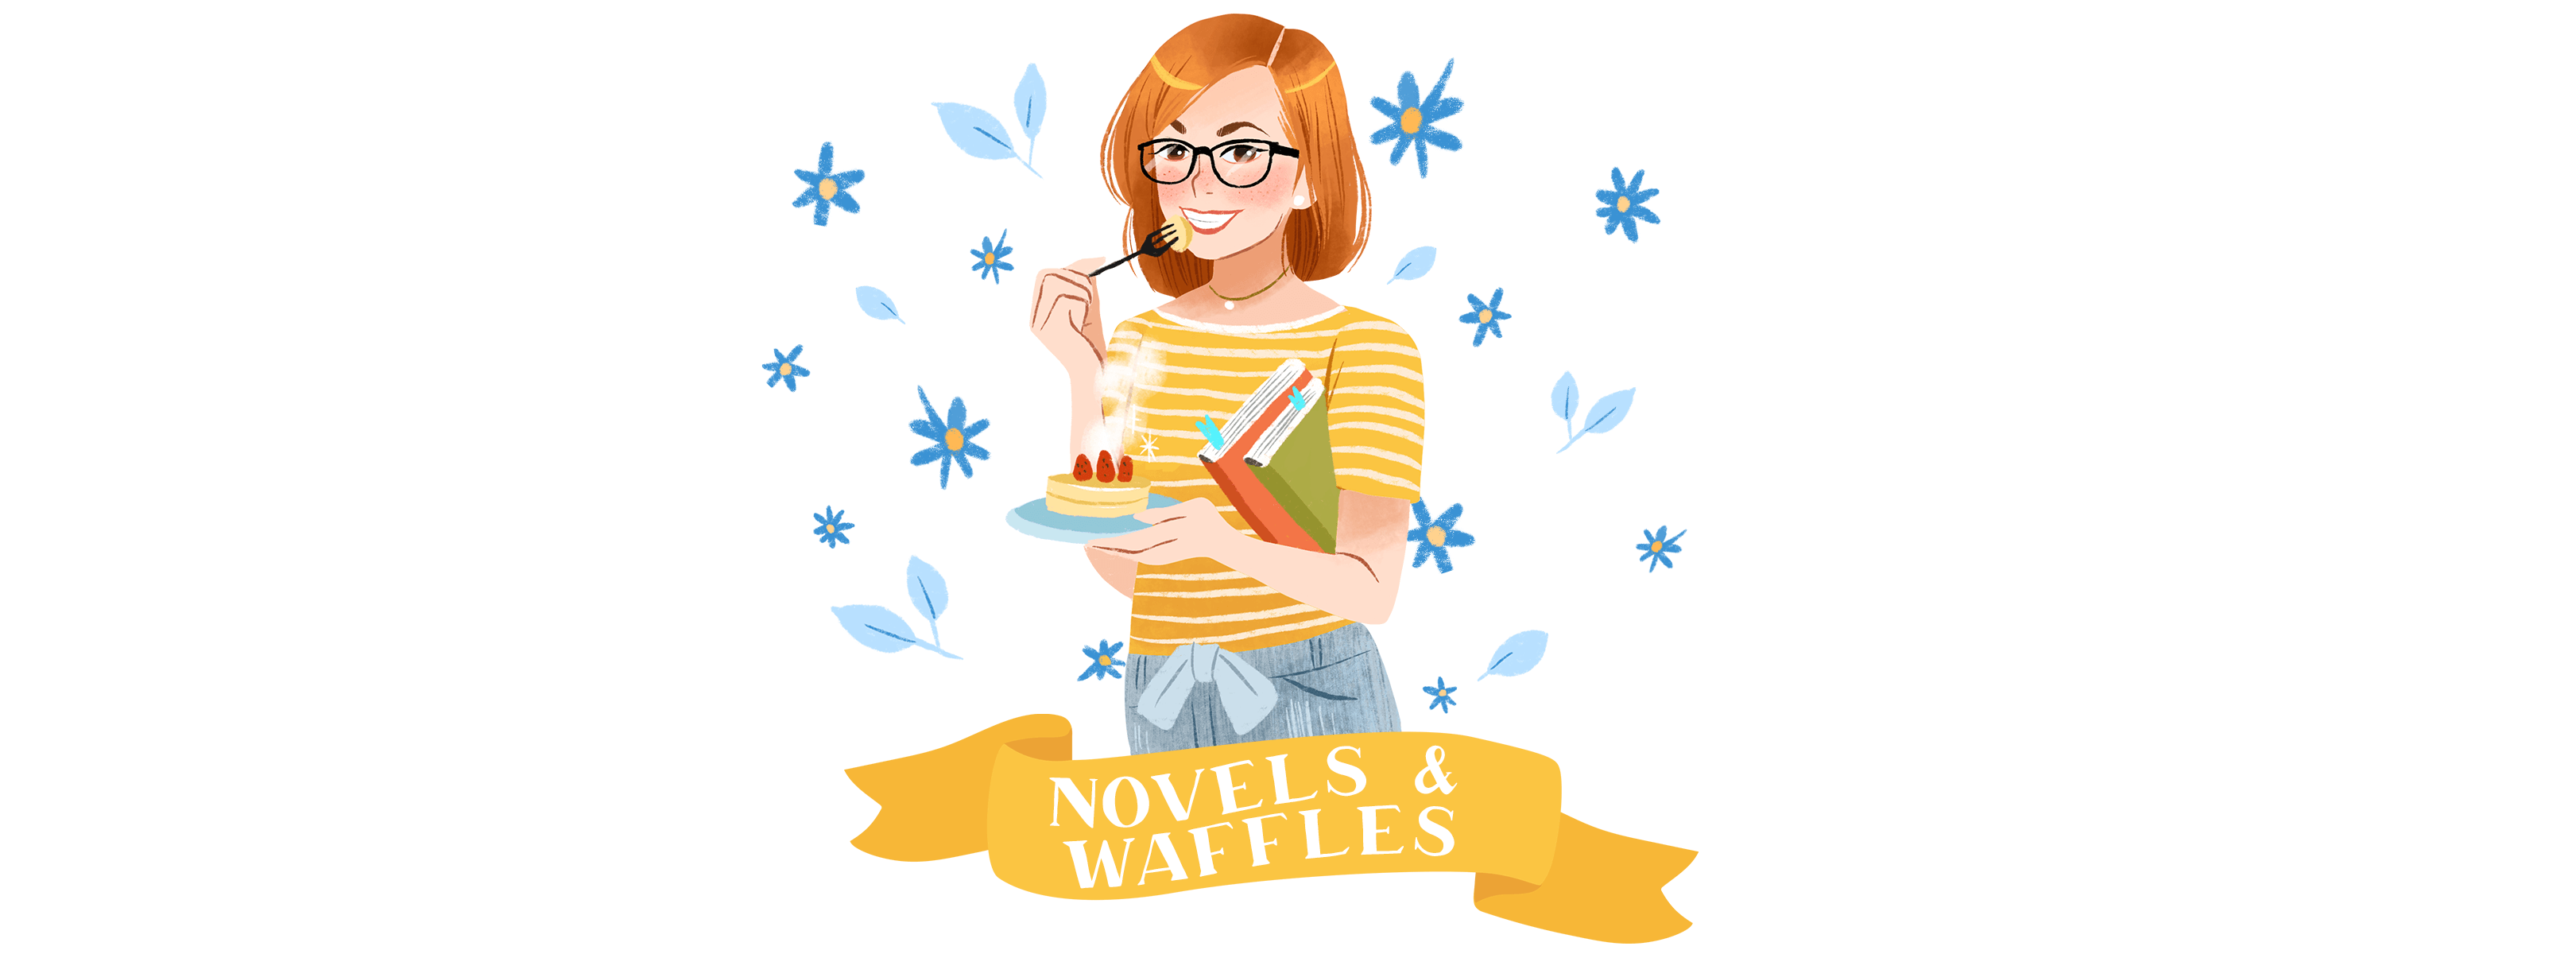 Novels & Waffles